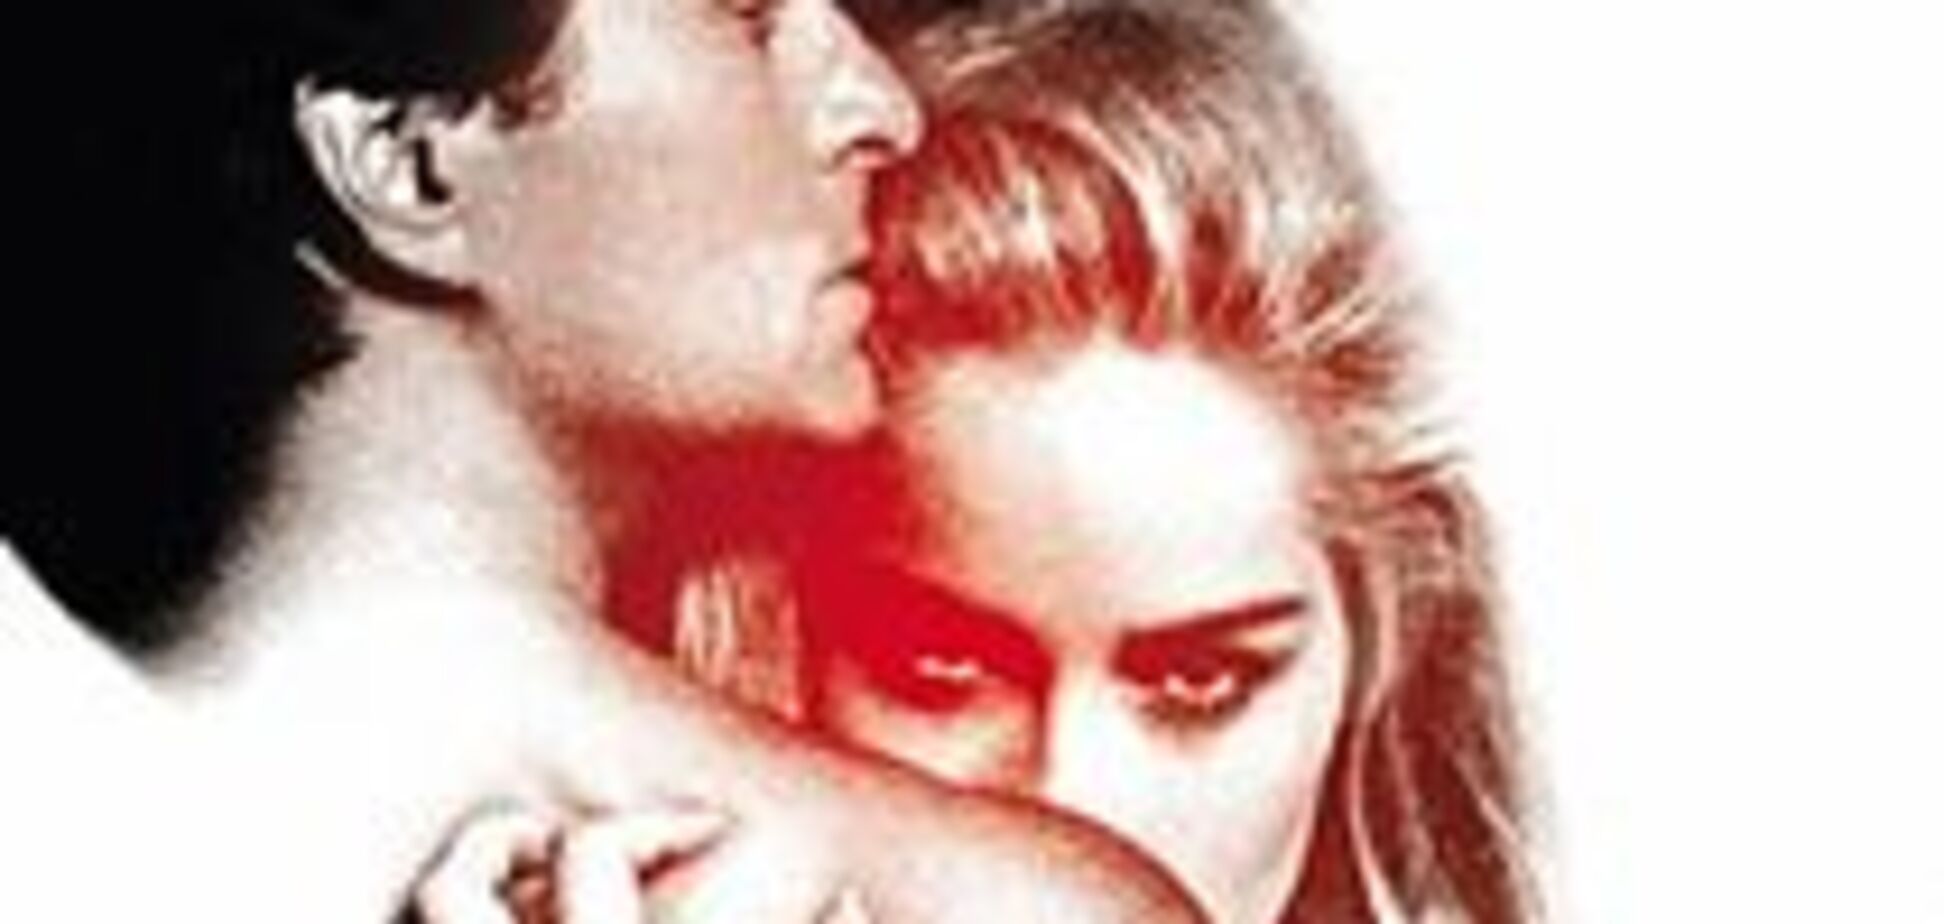 Шерон Стоун влепила режиссеру пощечину: как снимали знаменитую секс-сцену в фильме 'Основной инстинкт'